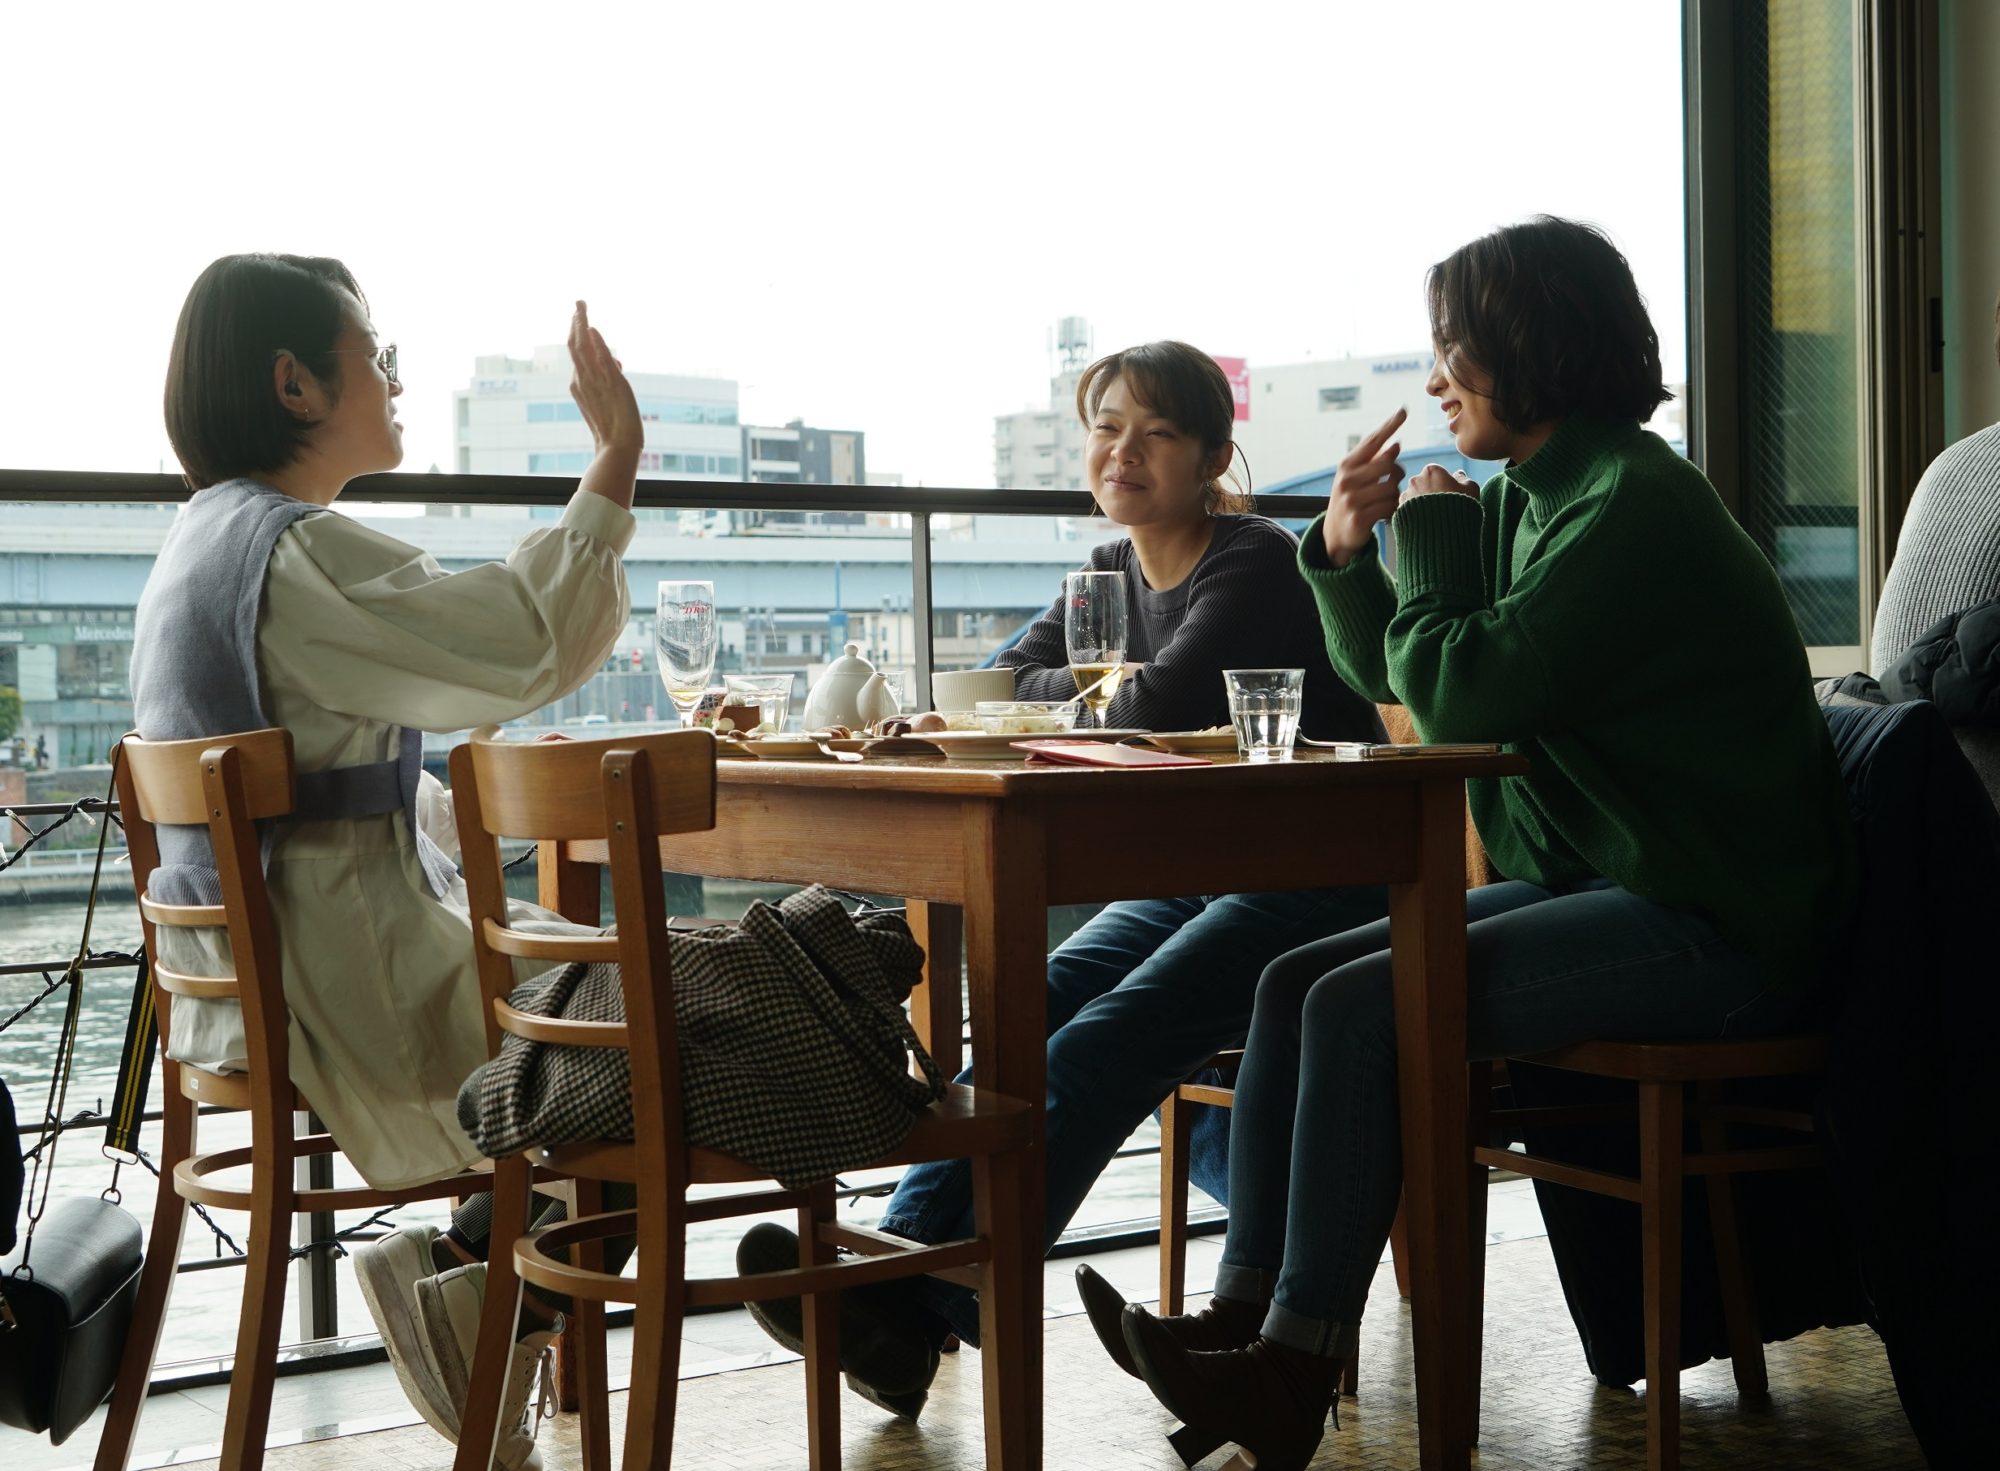 場面写真 長井さんとケイコがお茶するカフェのシーン